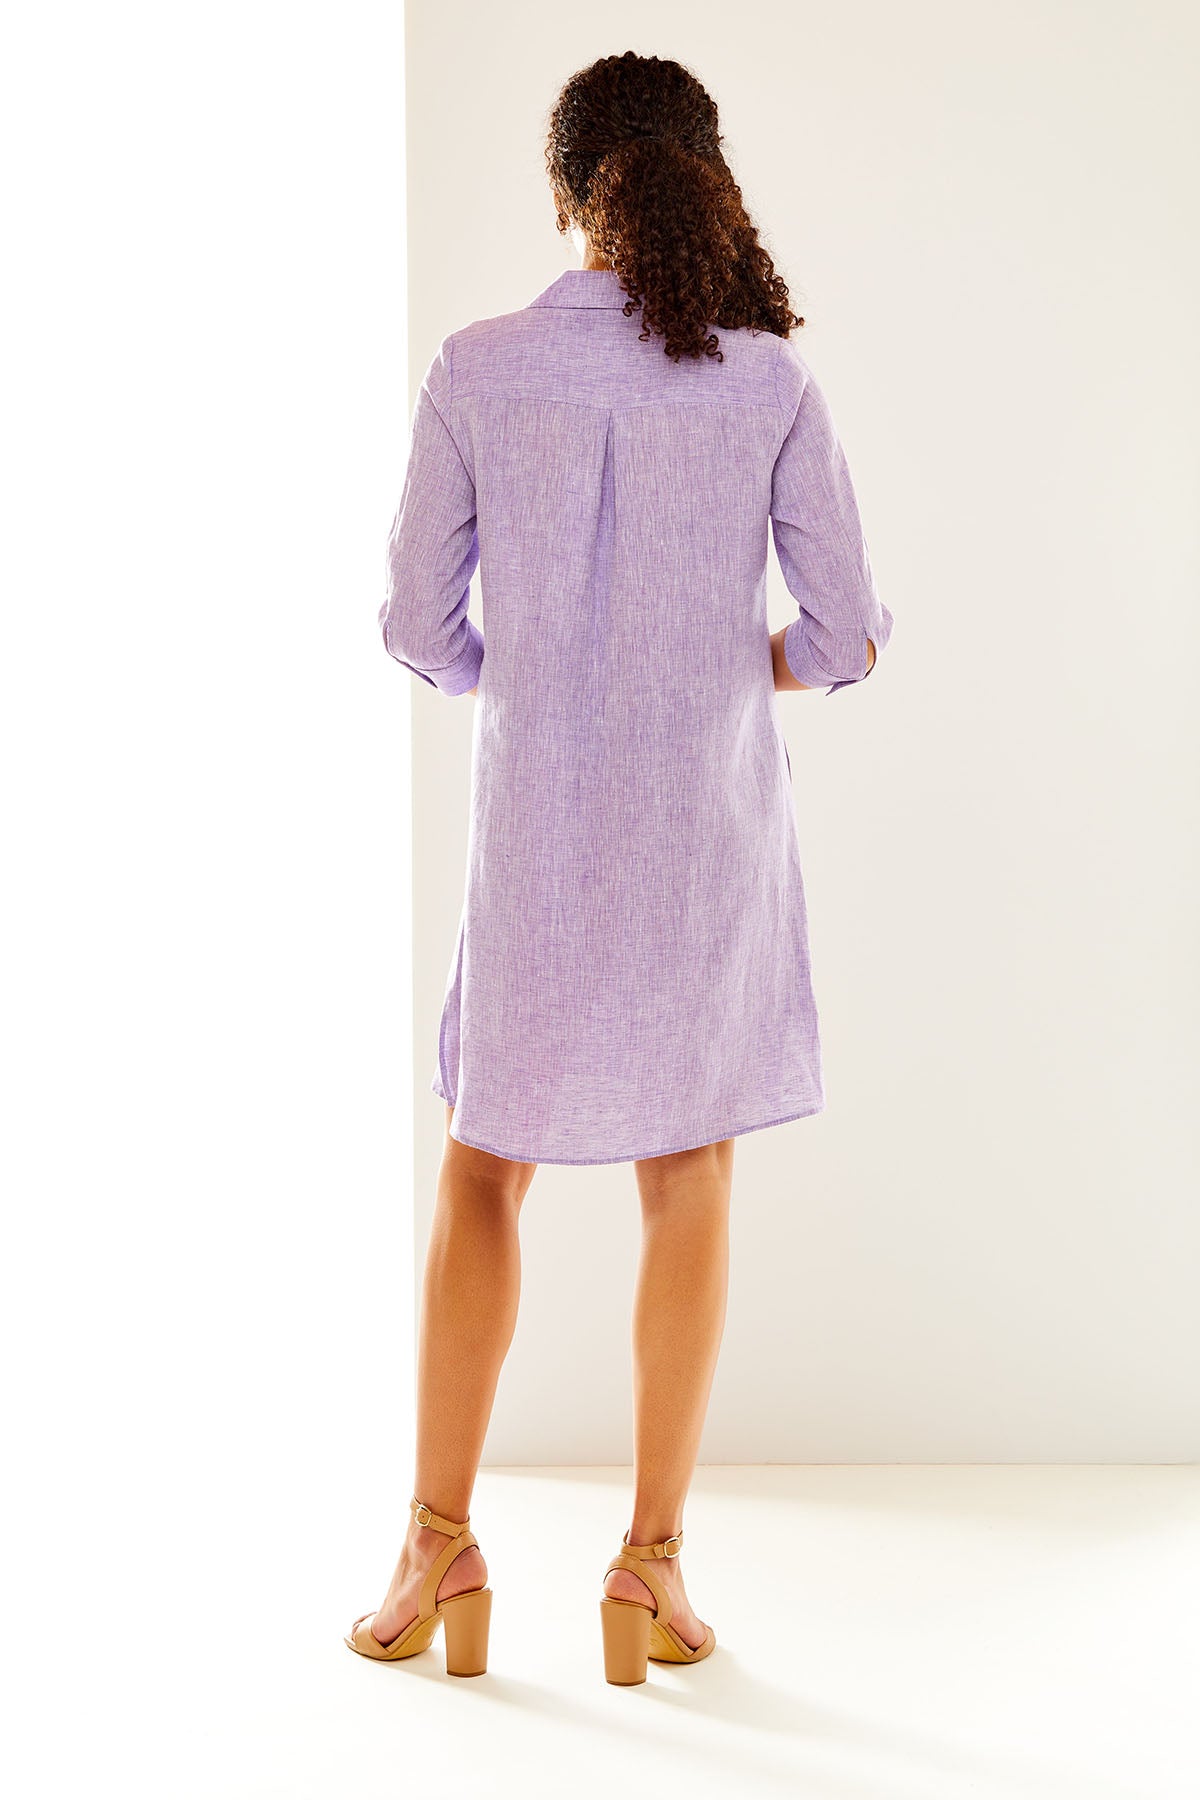 Woman in purple linen shirtdress